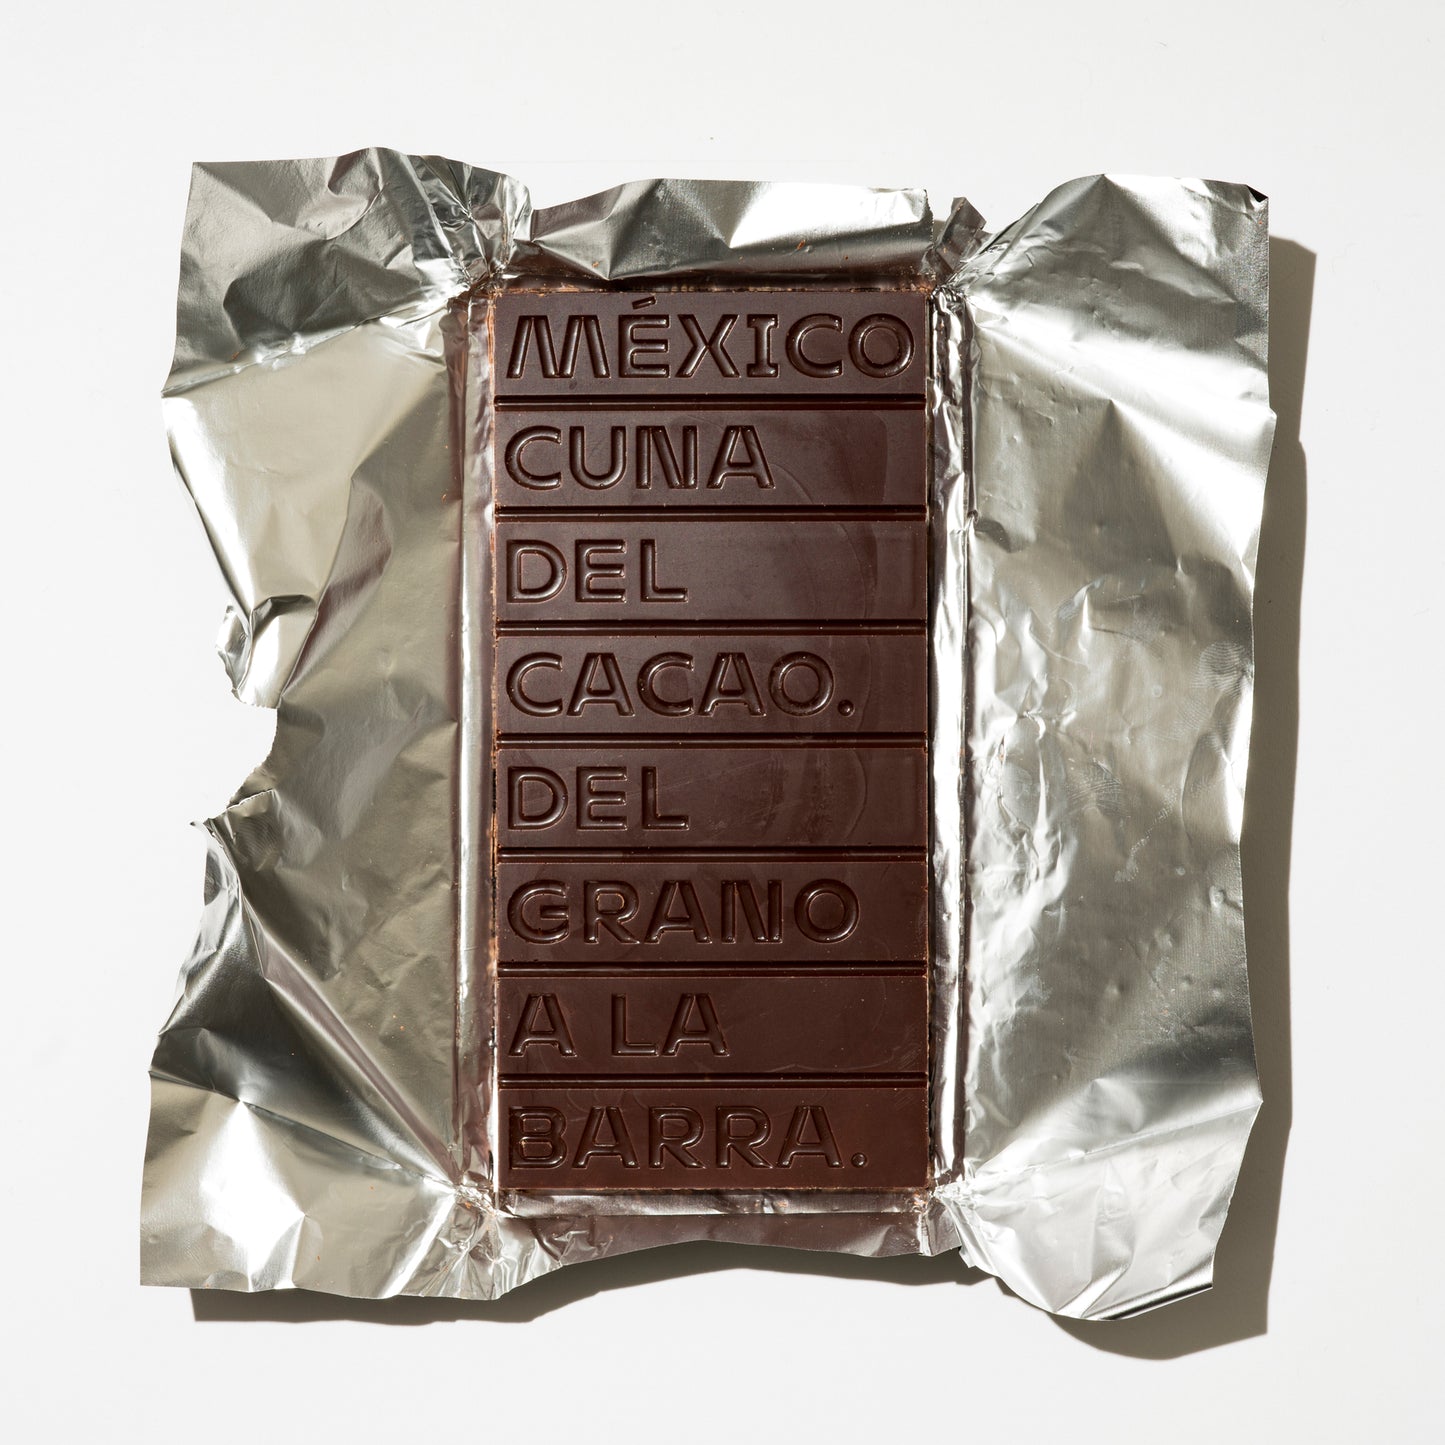 73% Cacao de Comalcalco con CHILE SECO AHUMADO